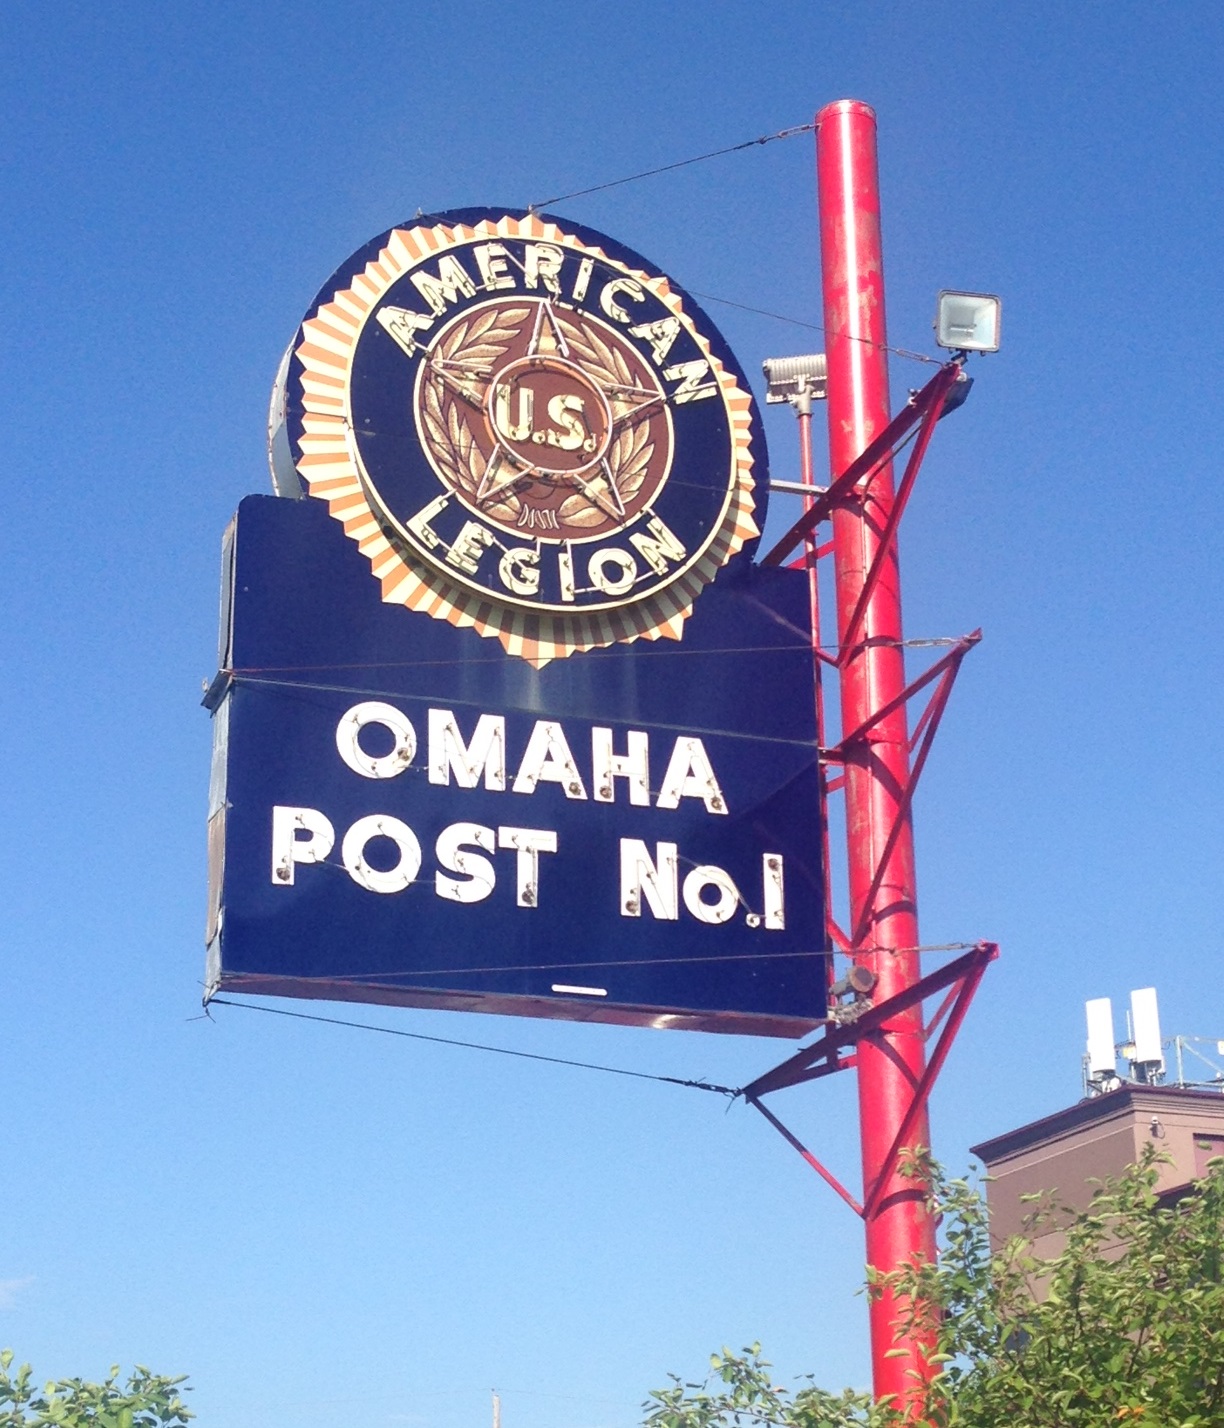 Post 1 Omaha, Nebraska